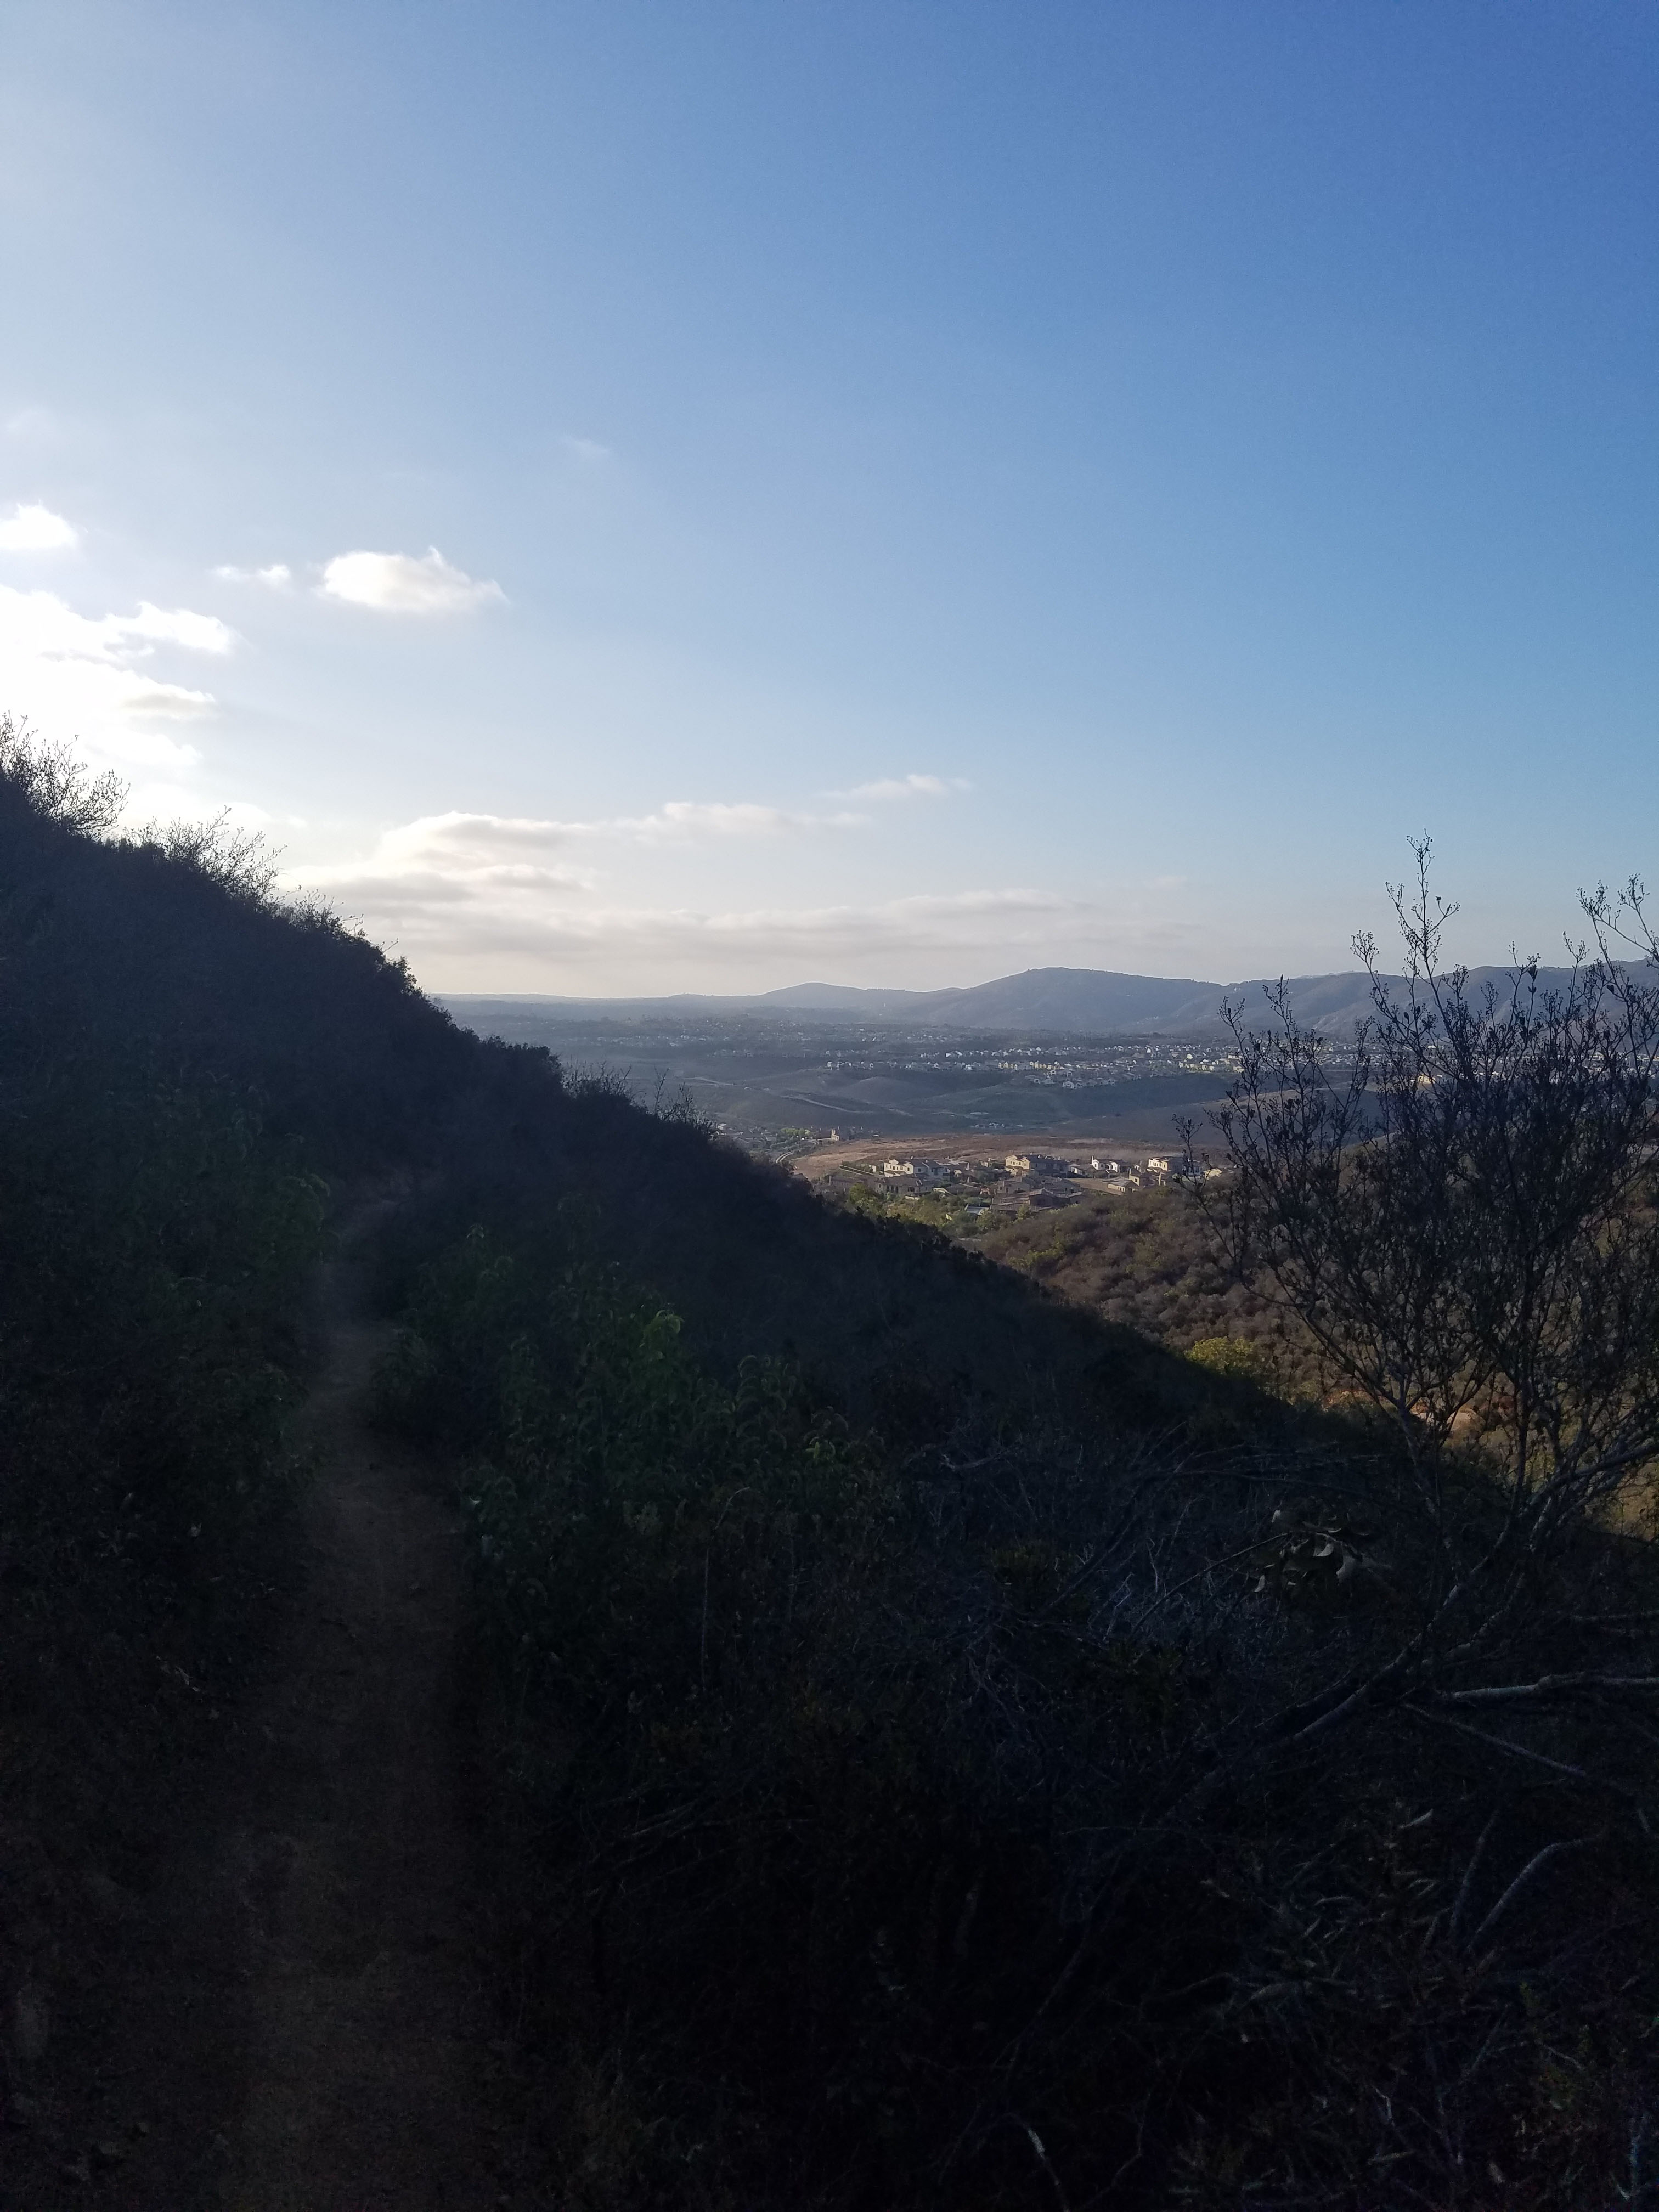 Lilac Canyon Trail